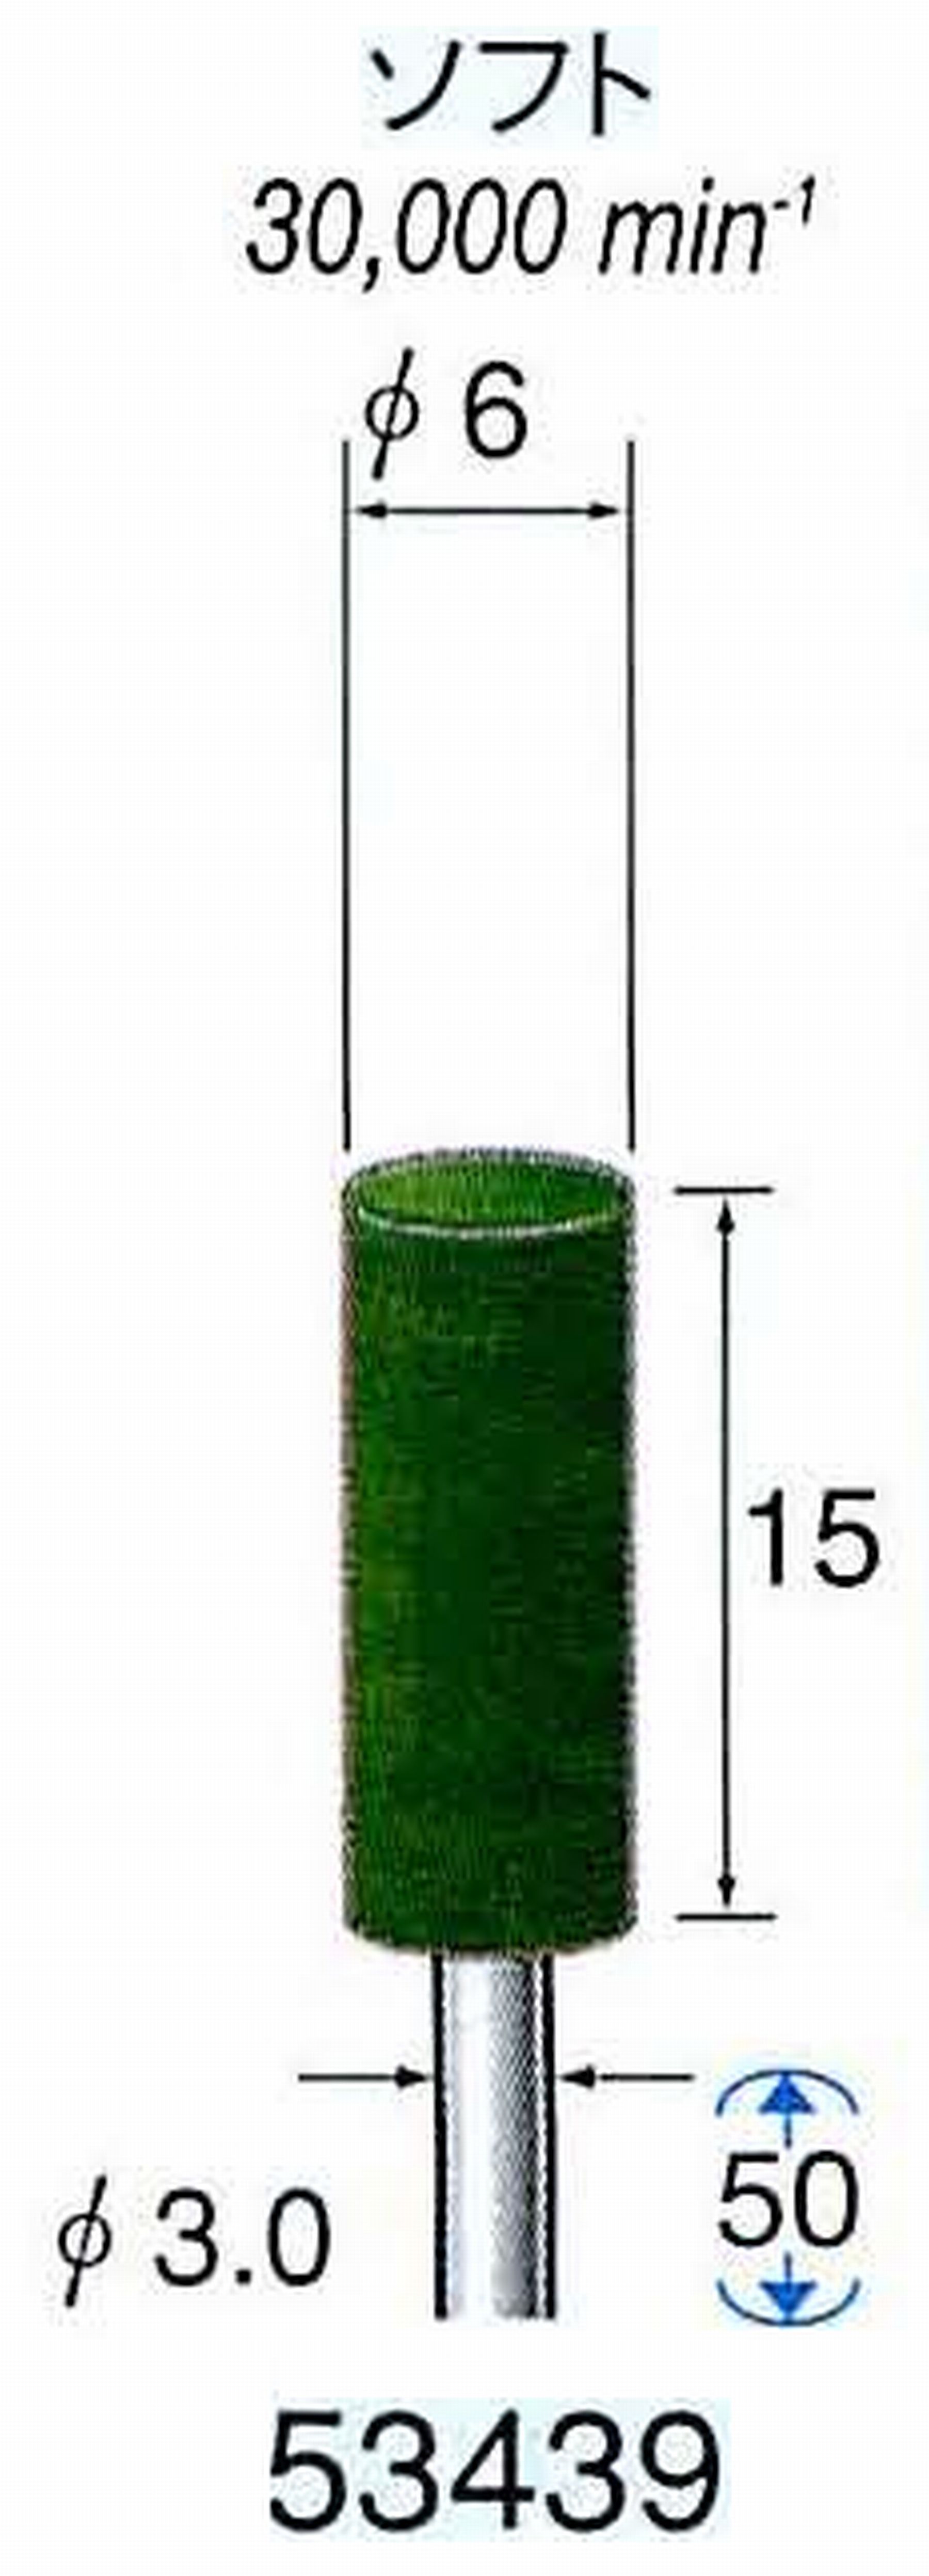 ナカニシ/NAKANISHI グリーンフェルトバフ ソフト(研磨材入り) 酸化クロム(青棒)含浸タイプ 軸径(シャンク)φ3.0mm 53439